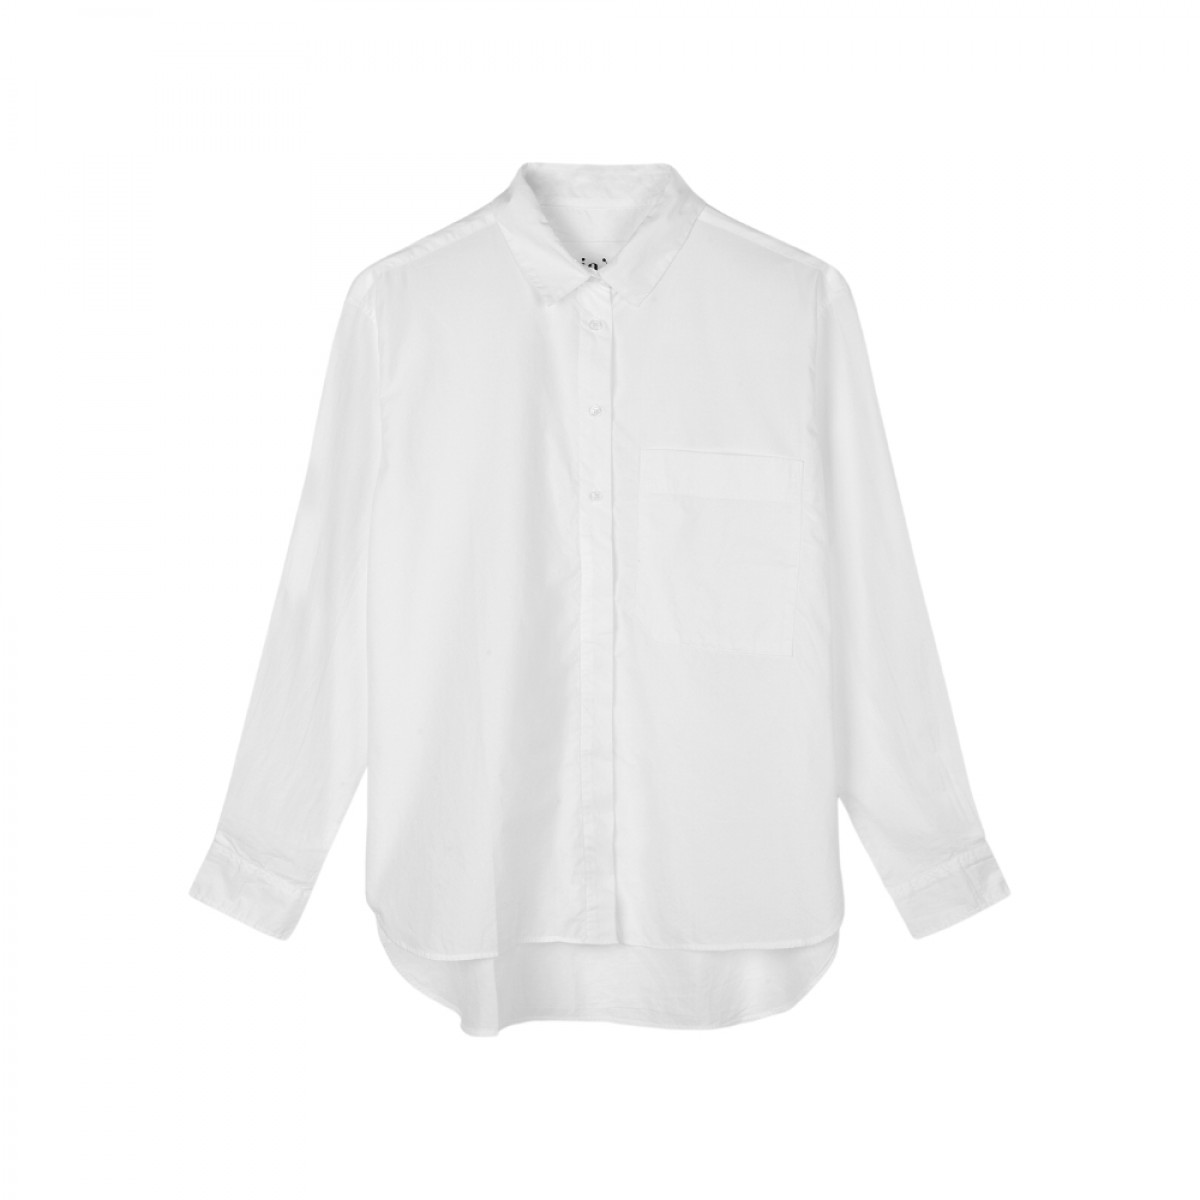 lynette shirt - white - front